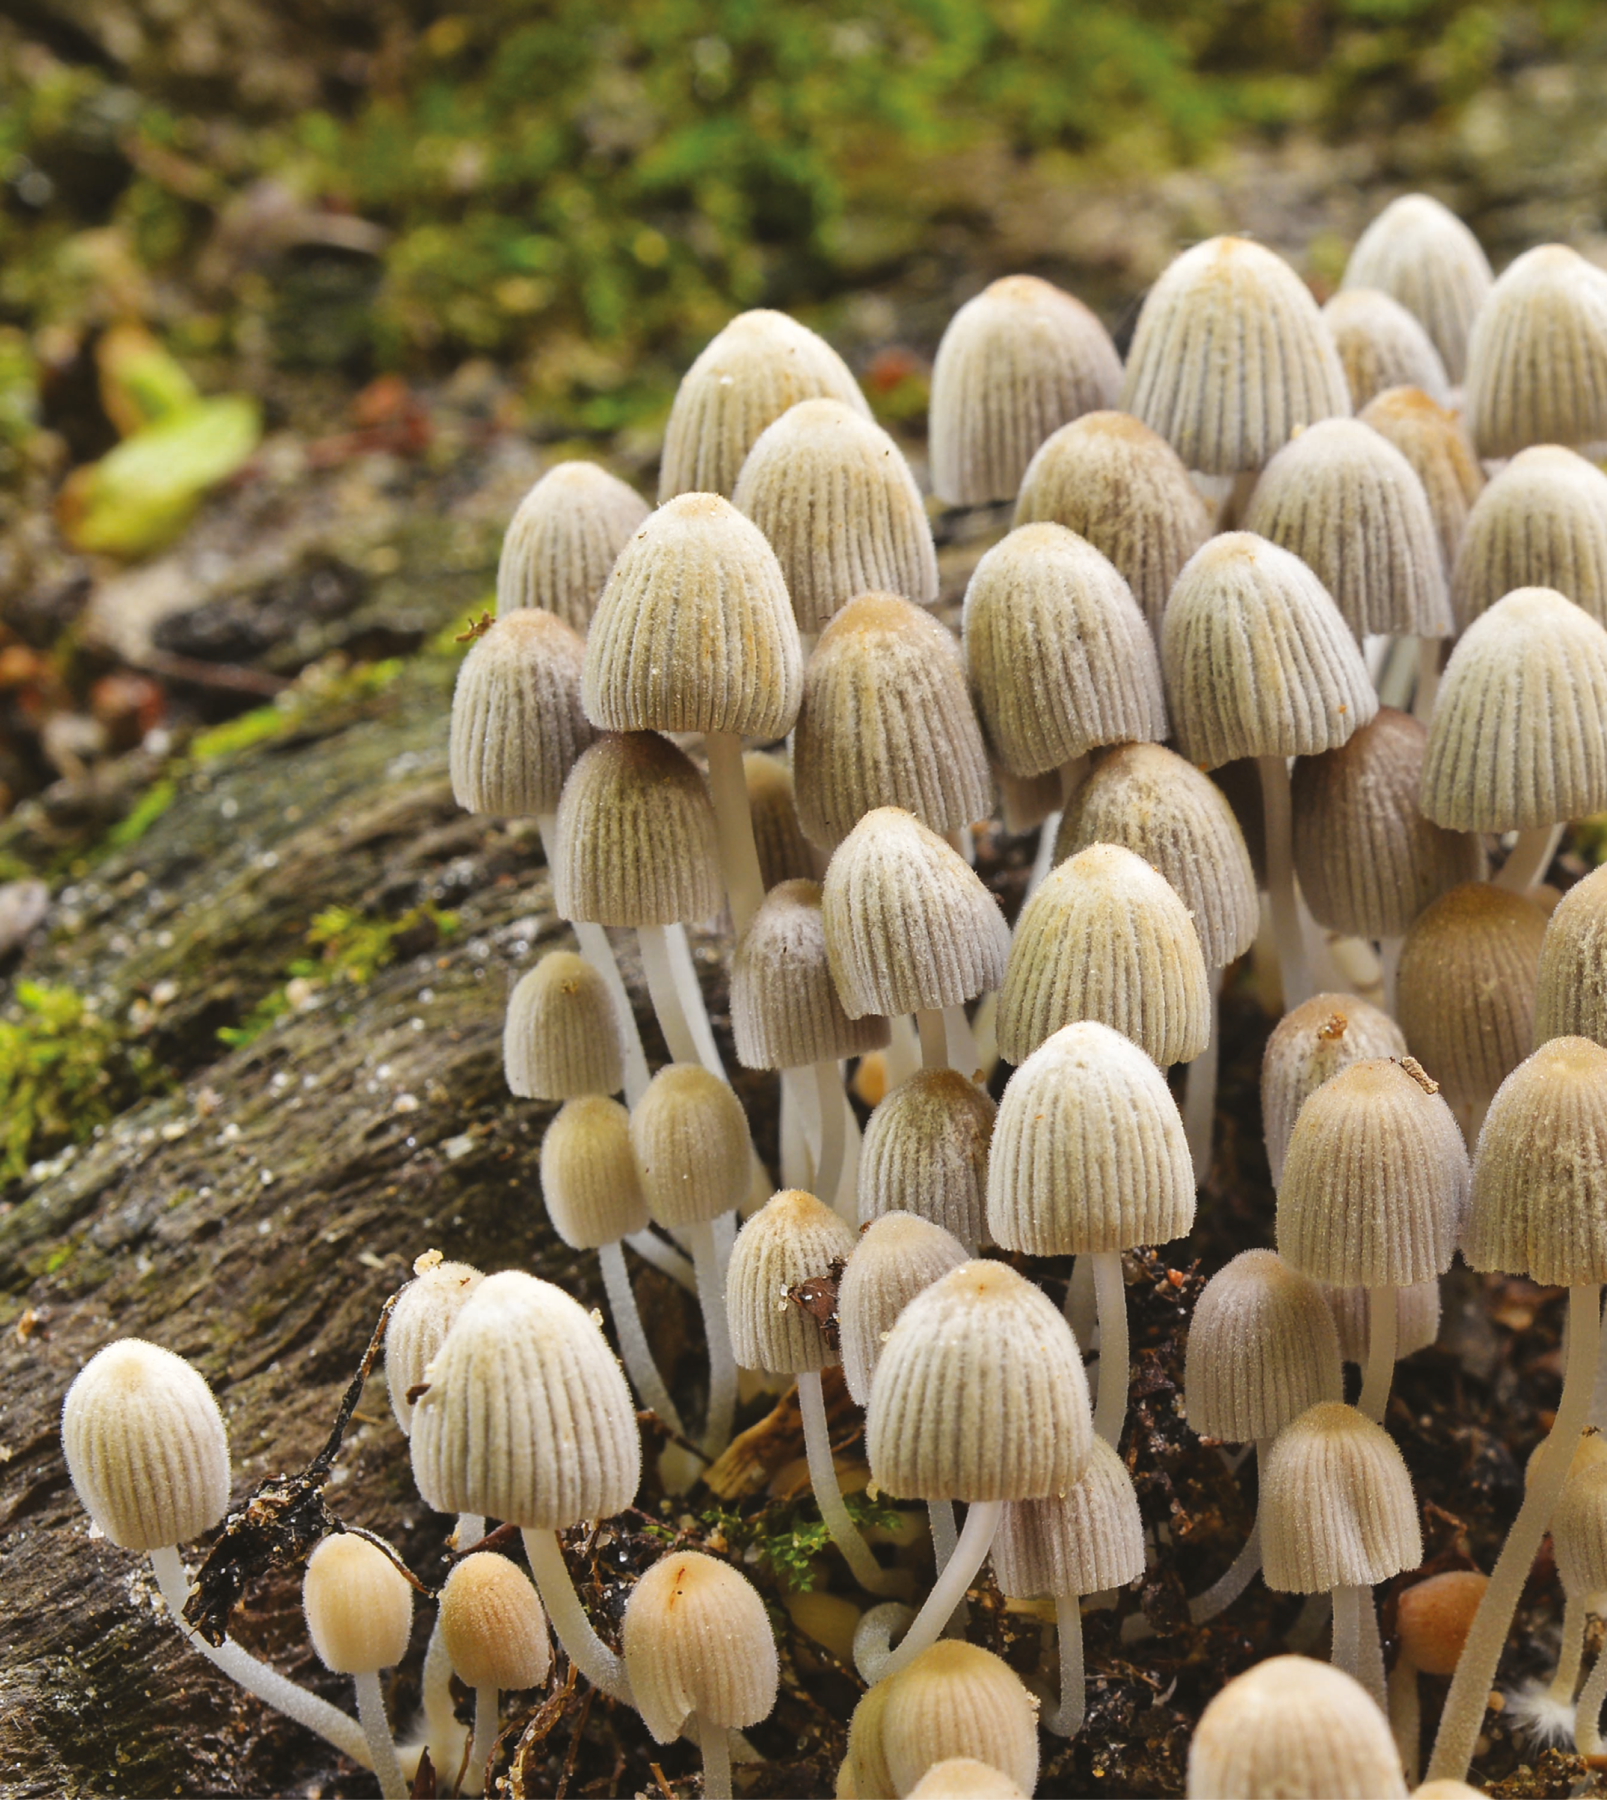 Fotografia. Uma colônia de cogumelos brancos, em formato que lembra um guarda-chuva fechado, está sobre um tronco de árvore no solo.